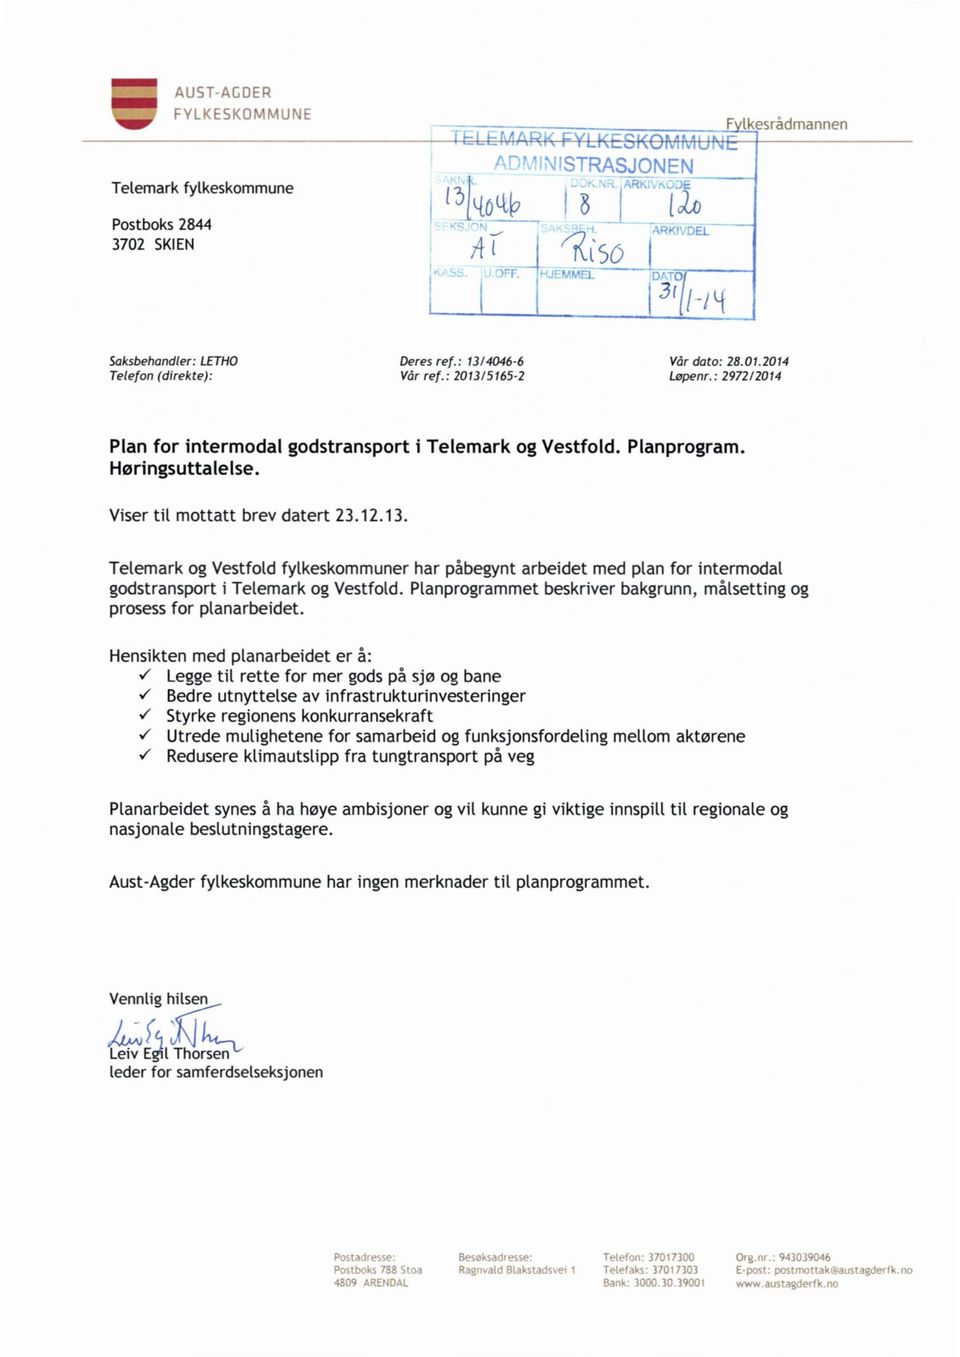 : 2972/2014 Plan for intermodal godstransport i Telemark og Vestfold. Planprogram. Høringsuttalelse. Viser til mottatt brev datert 23.12.13.